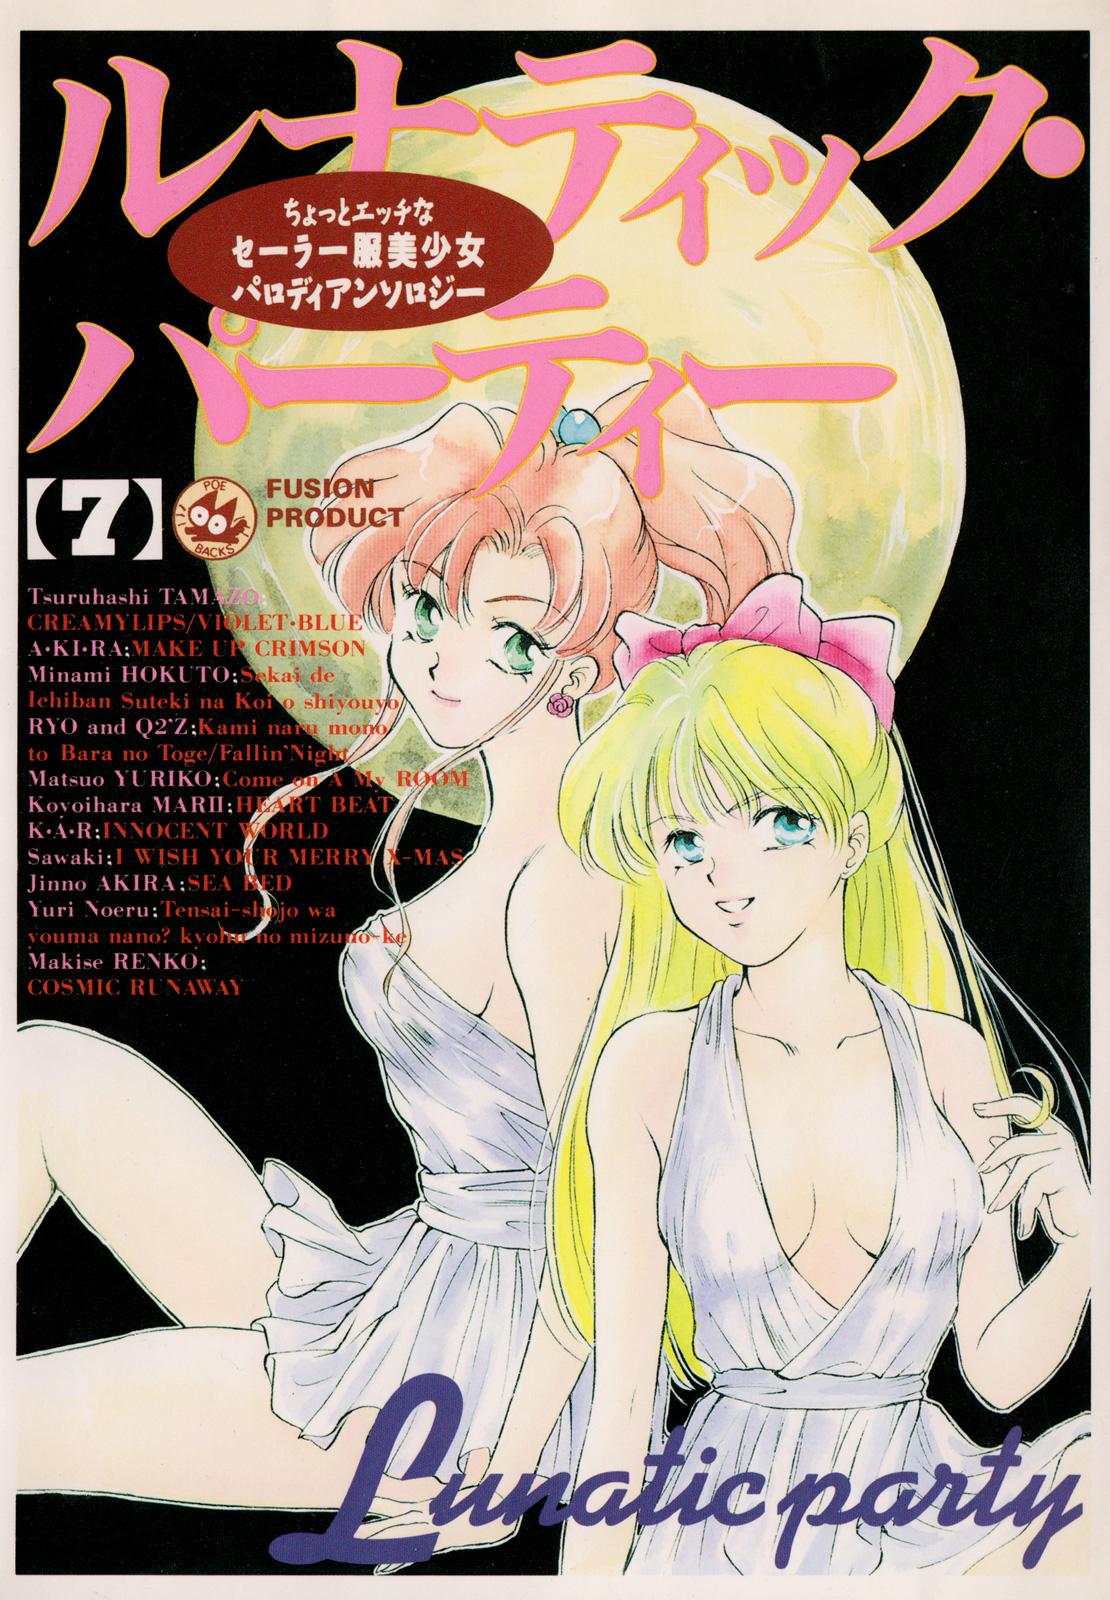 Realsex Lunatic Party 7 - Sailor moon Celebrity Nudes - Picture 1